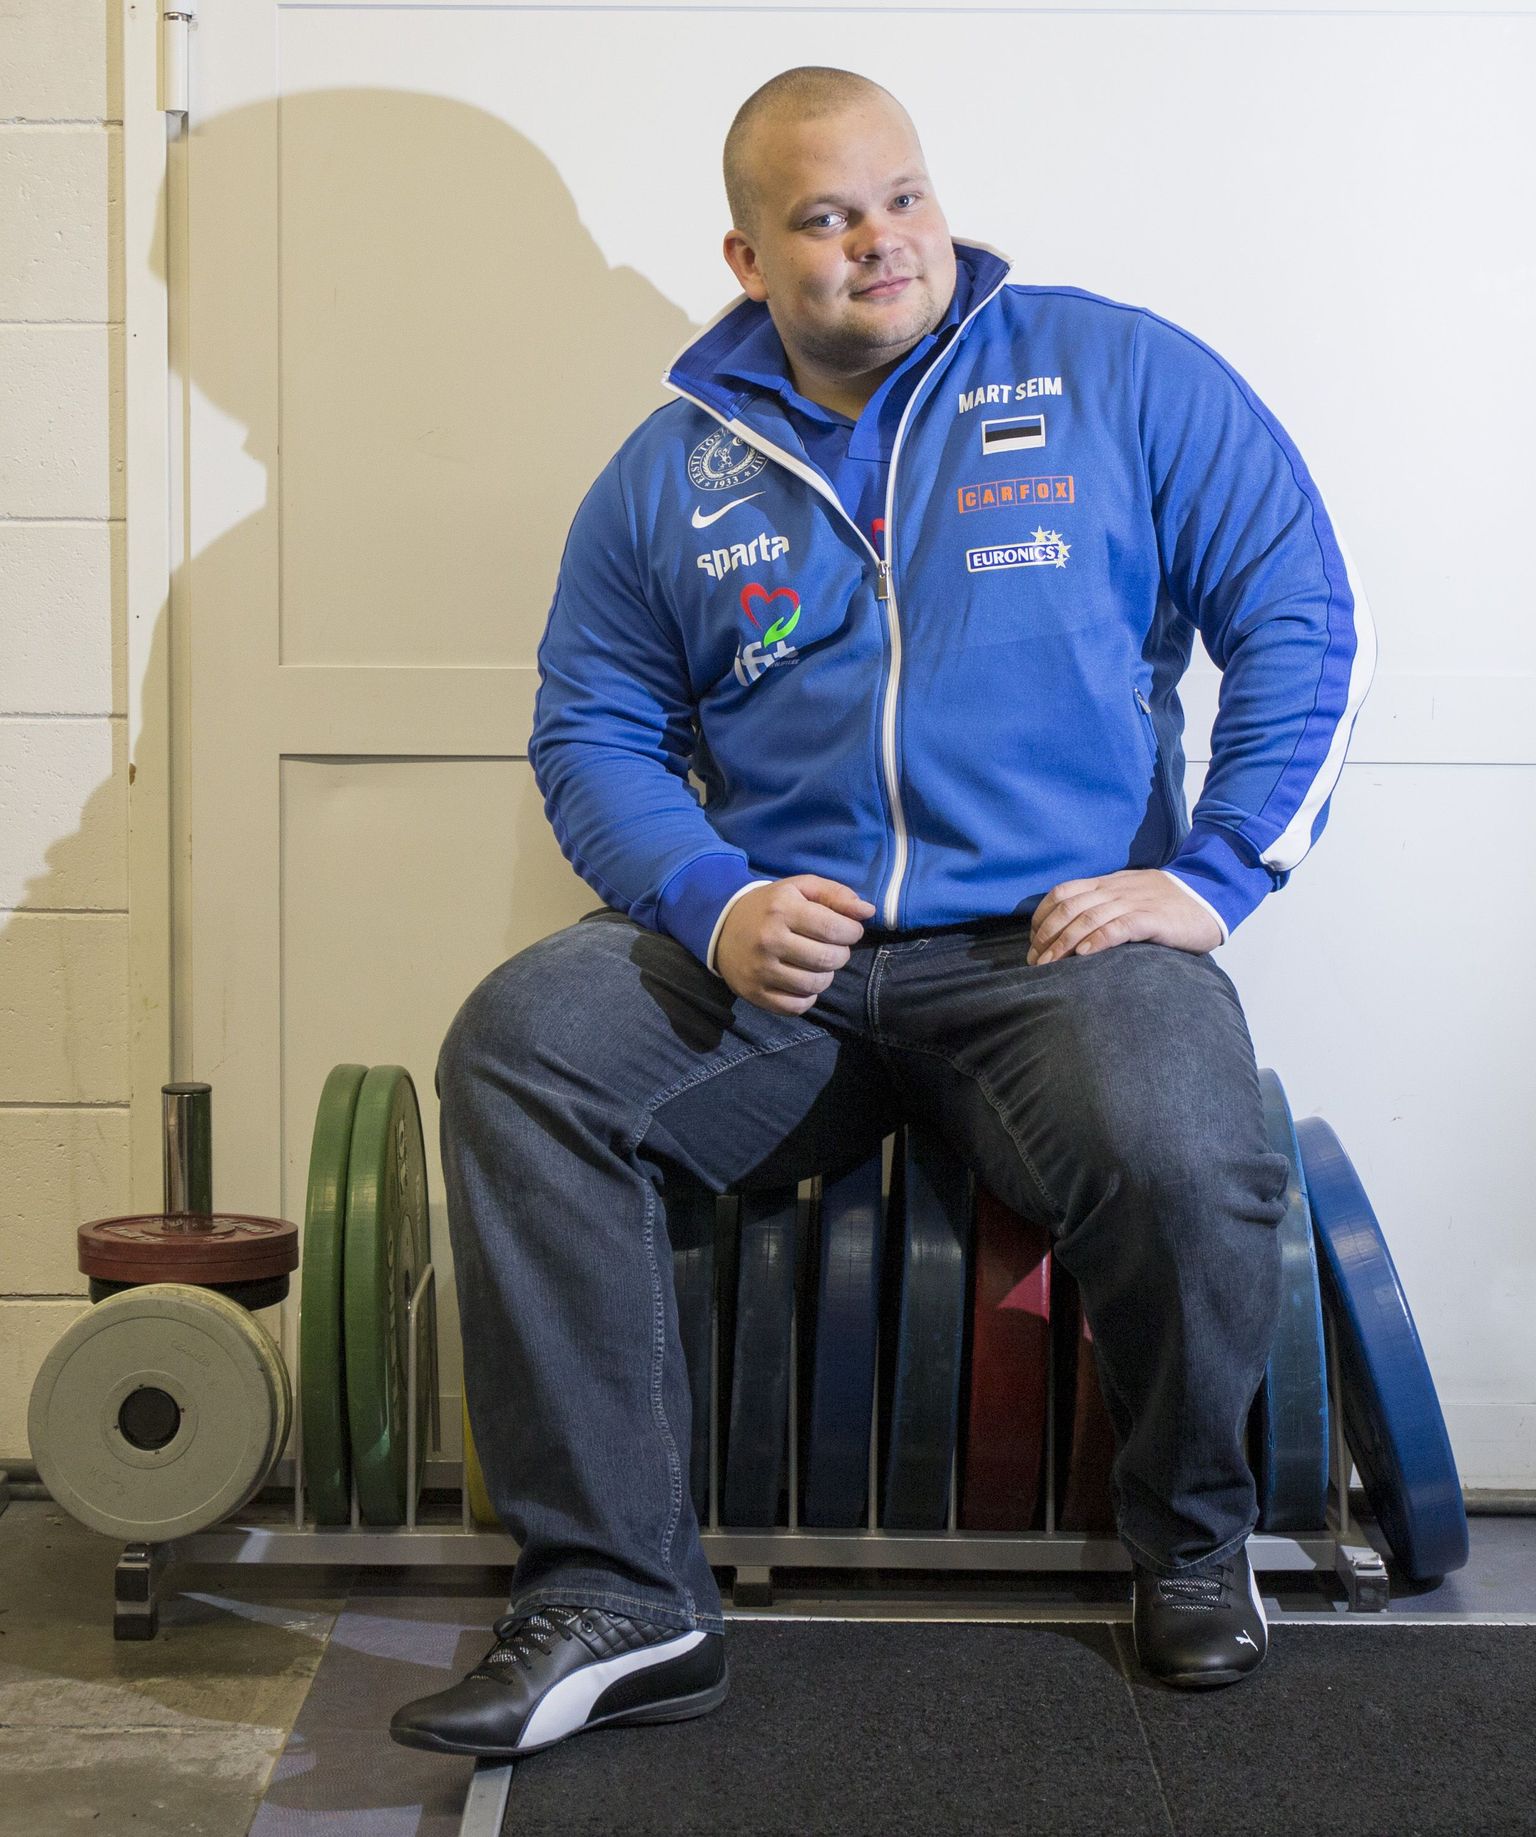 Mart Seimi praegune eesmärk on saada kaal 152 kilogrammilt 155-le. Iga kilo mängib tulemuses rolli, nendib ta.